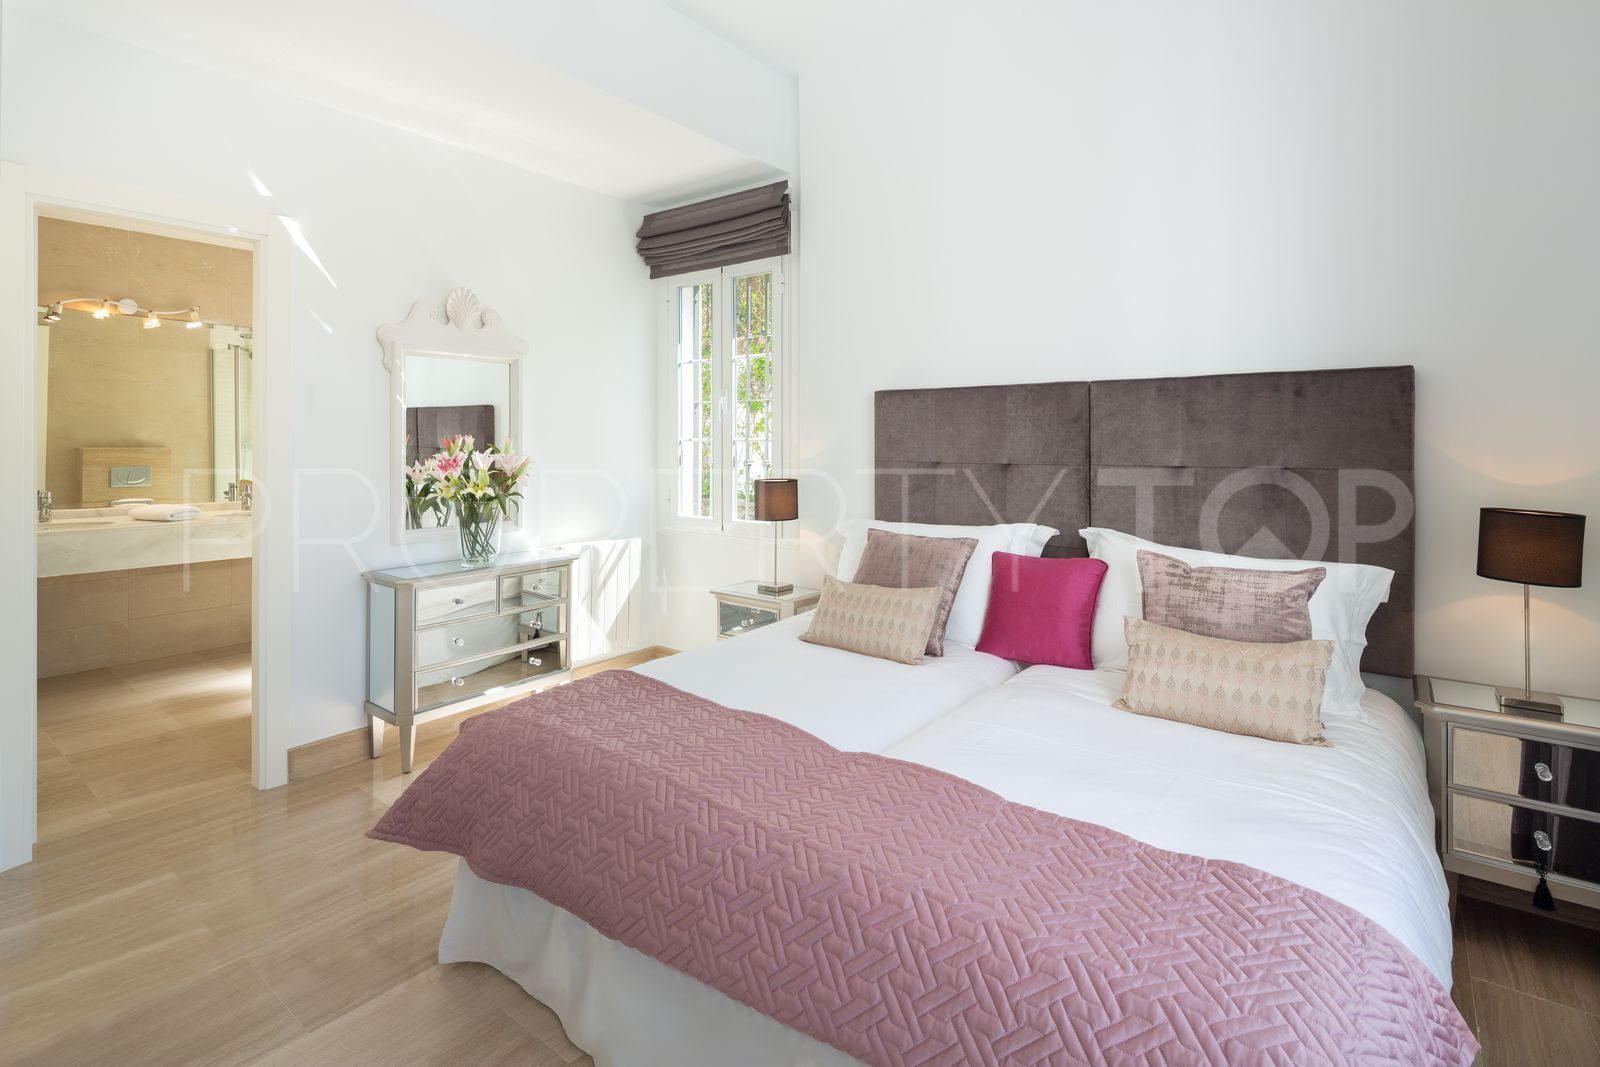 6 bedrooms villa for sale in Elviria